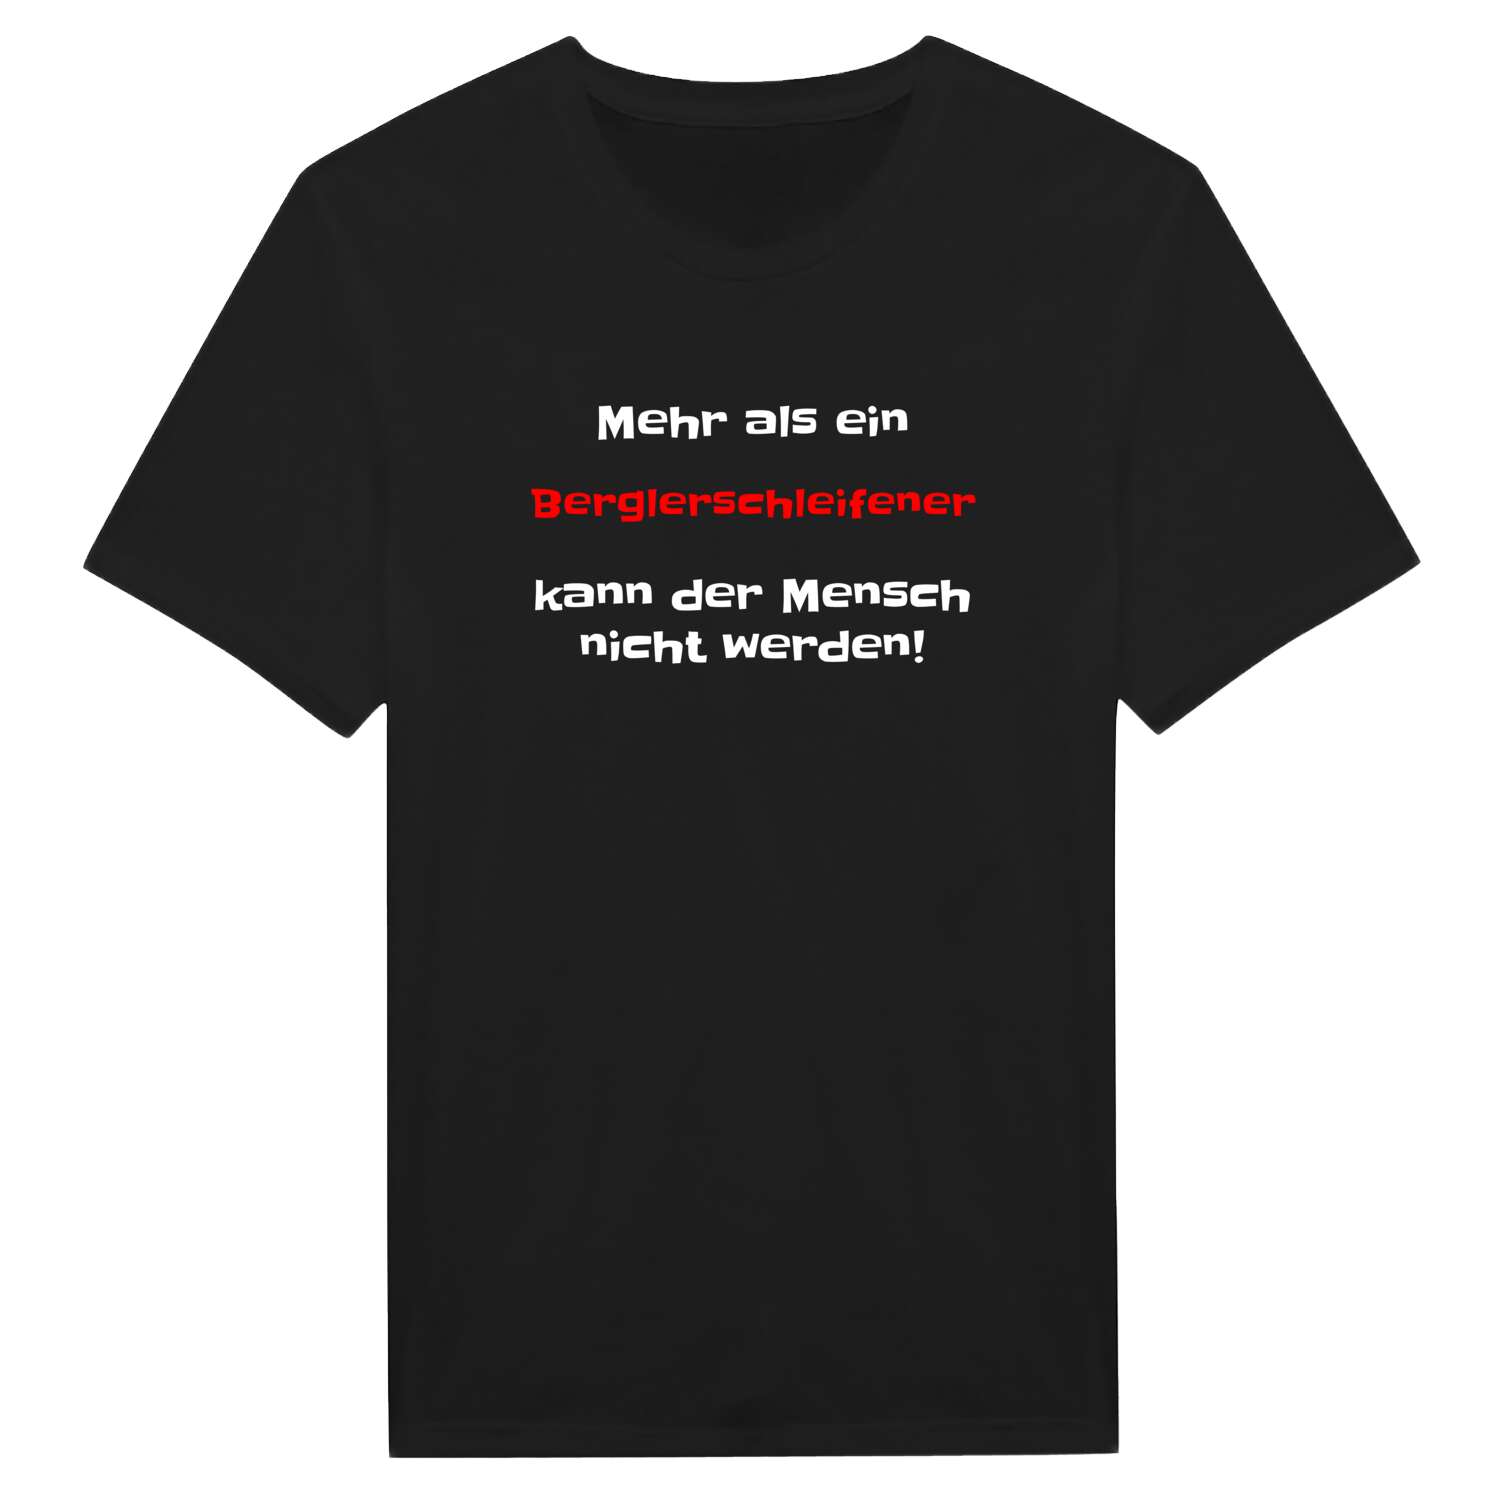 Berglerschleife T-Shirt »Mehr als ein«